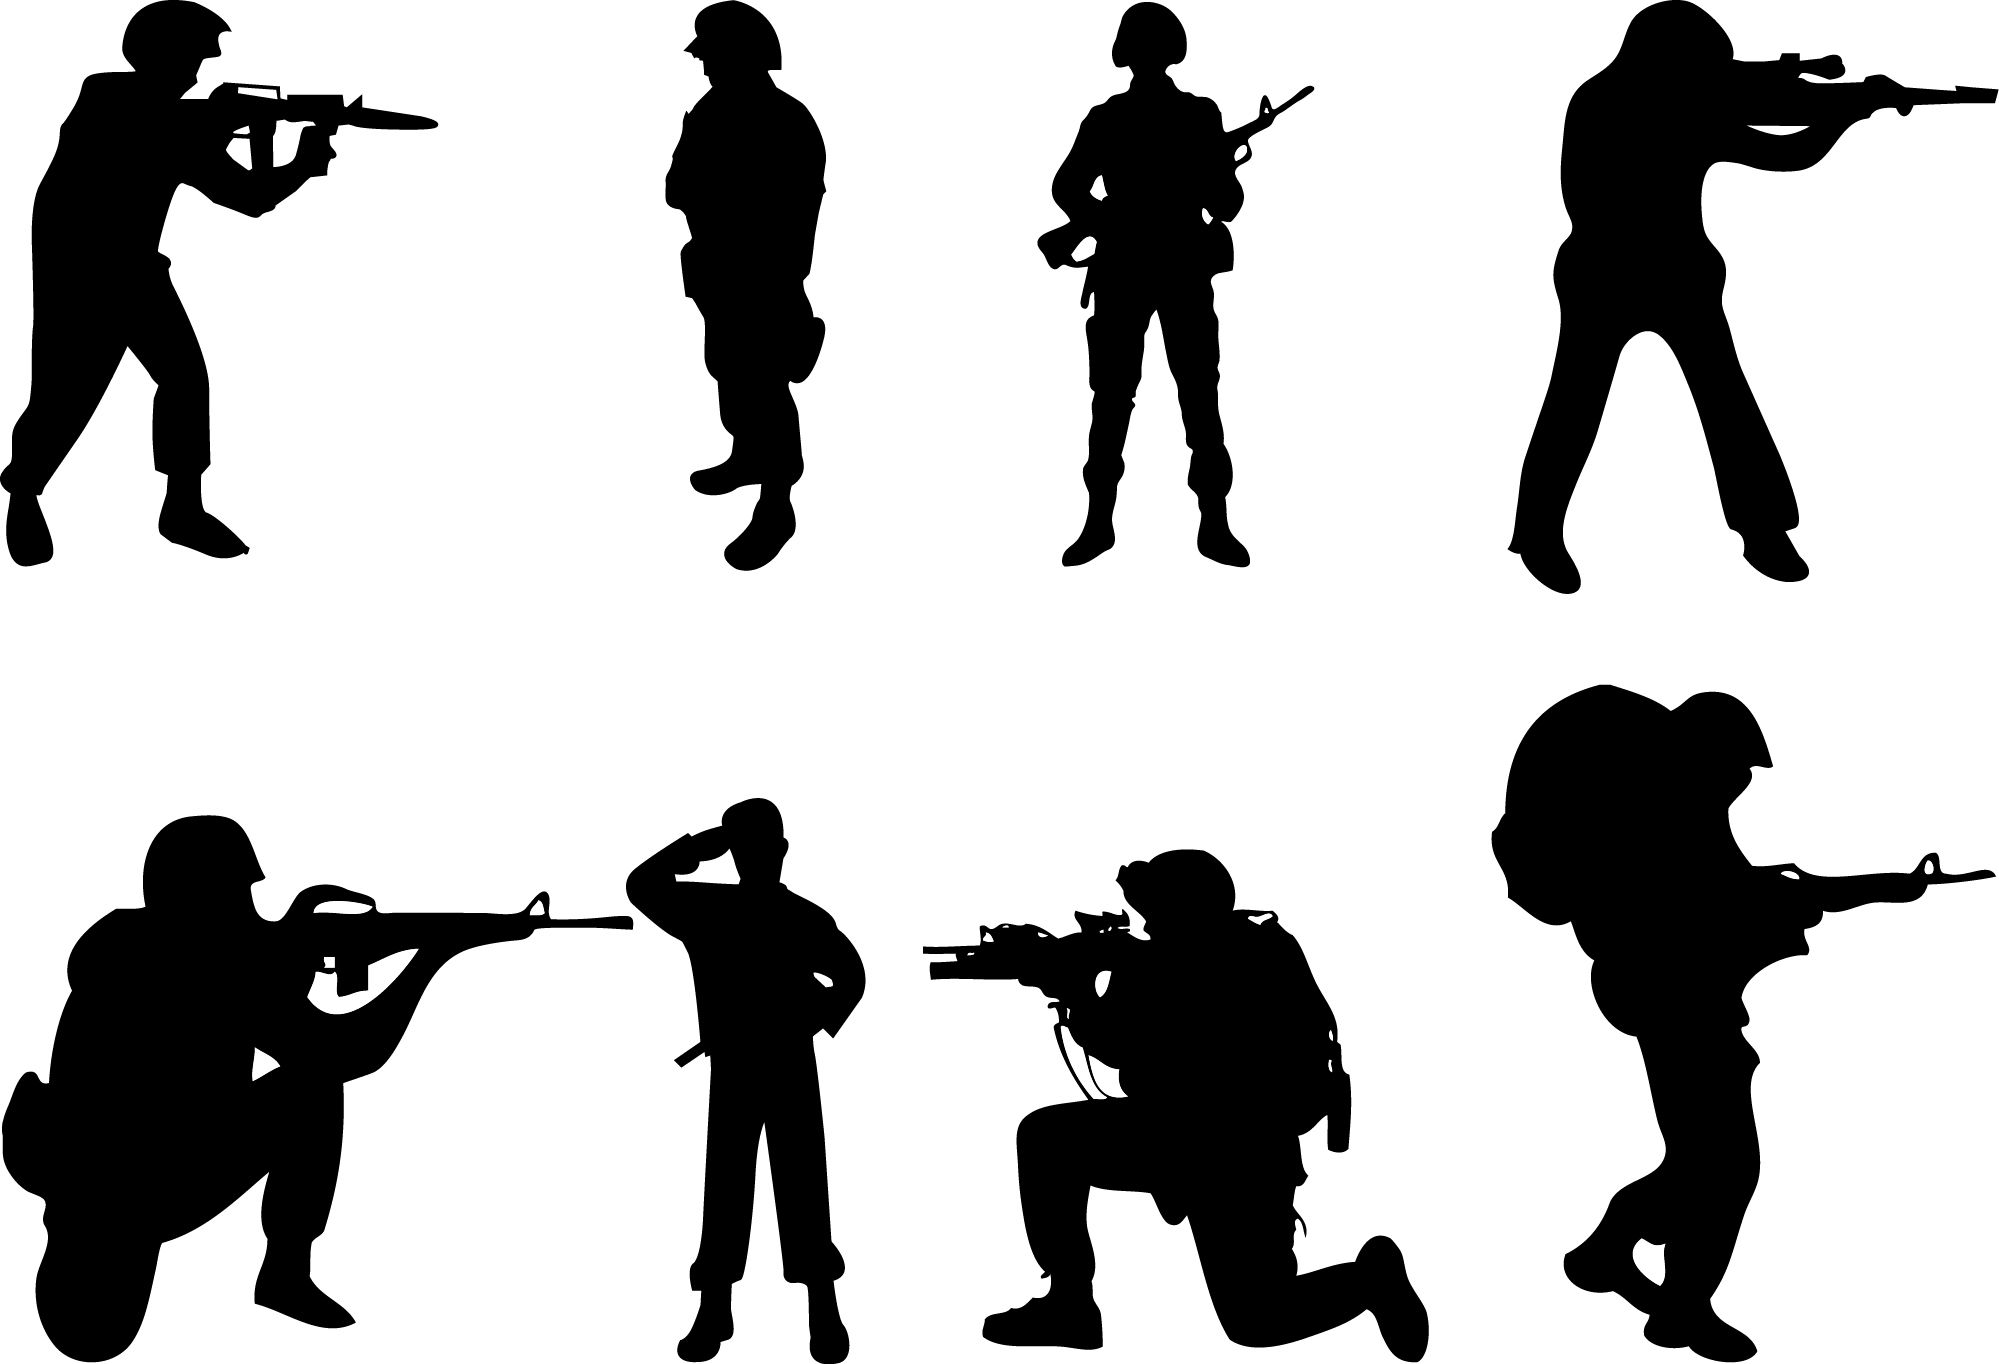 Combatsilhouette soldier silhouette.